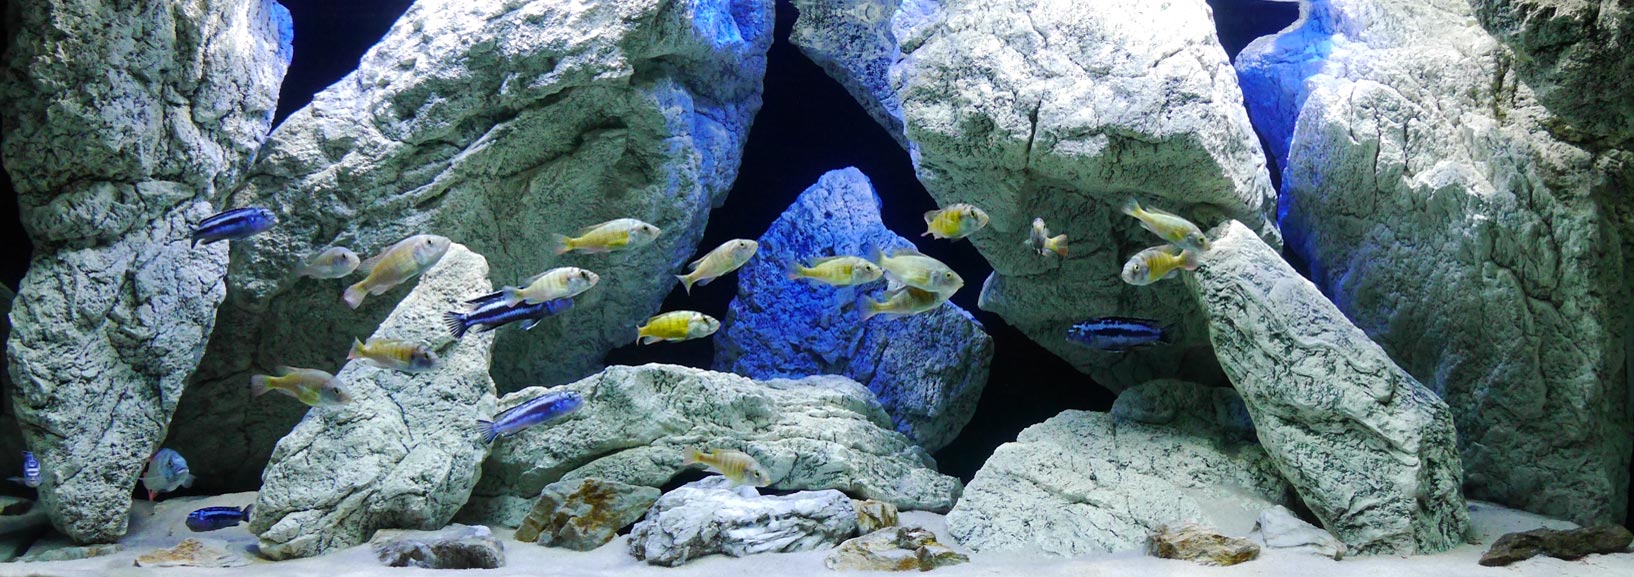 Aquarium rotsen in het Malawi aquarium